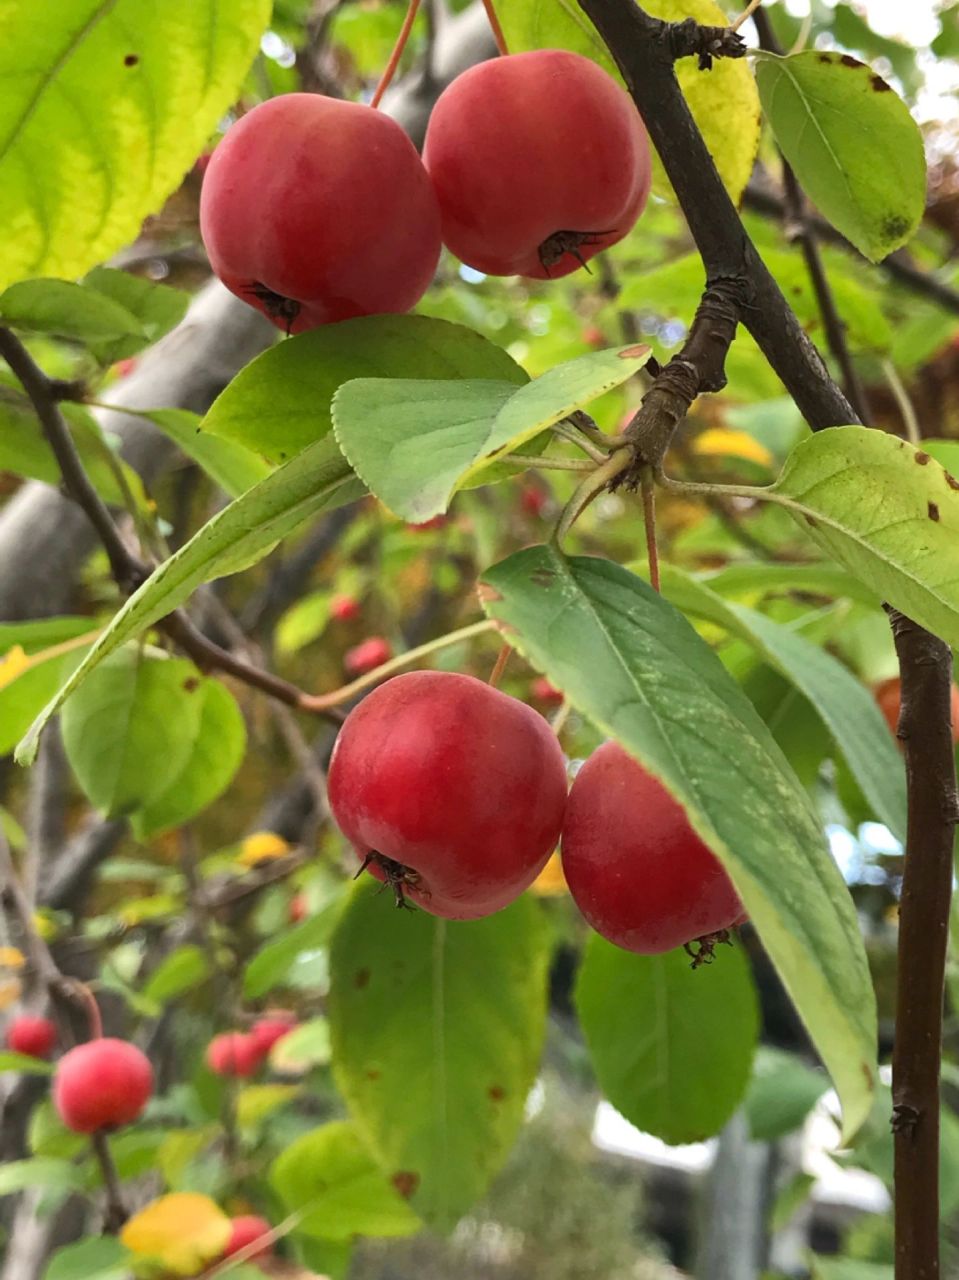 97 冬红果海棠是北美海棠的一种,属于蔷薇科苹果属,树形精美紧致